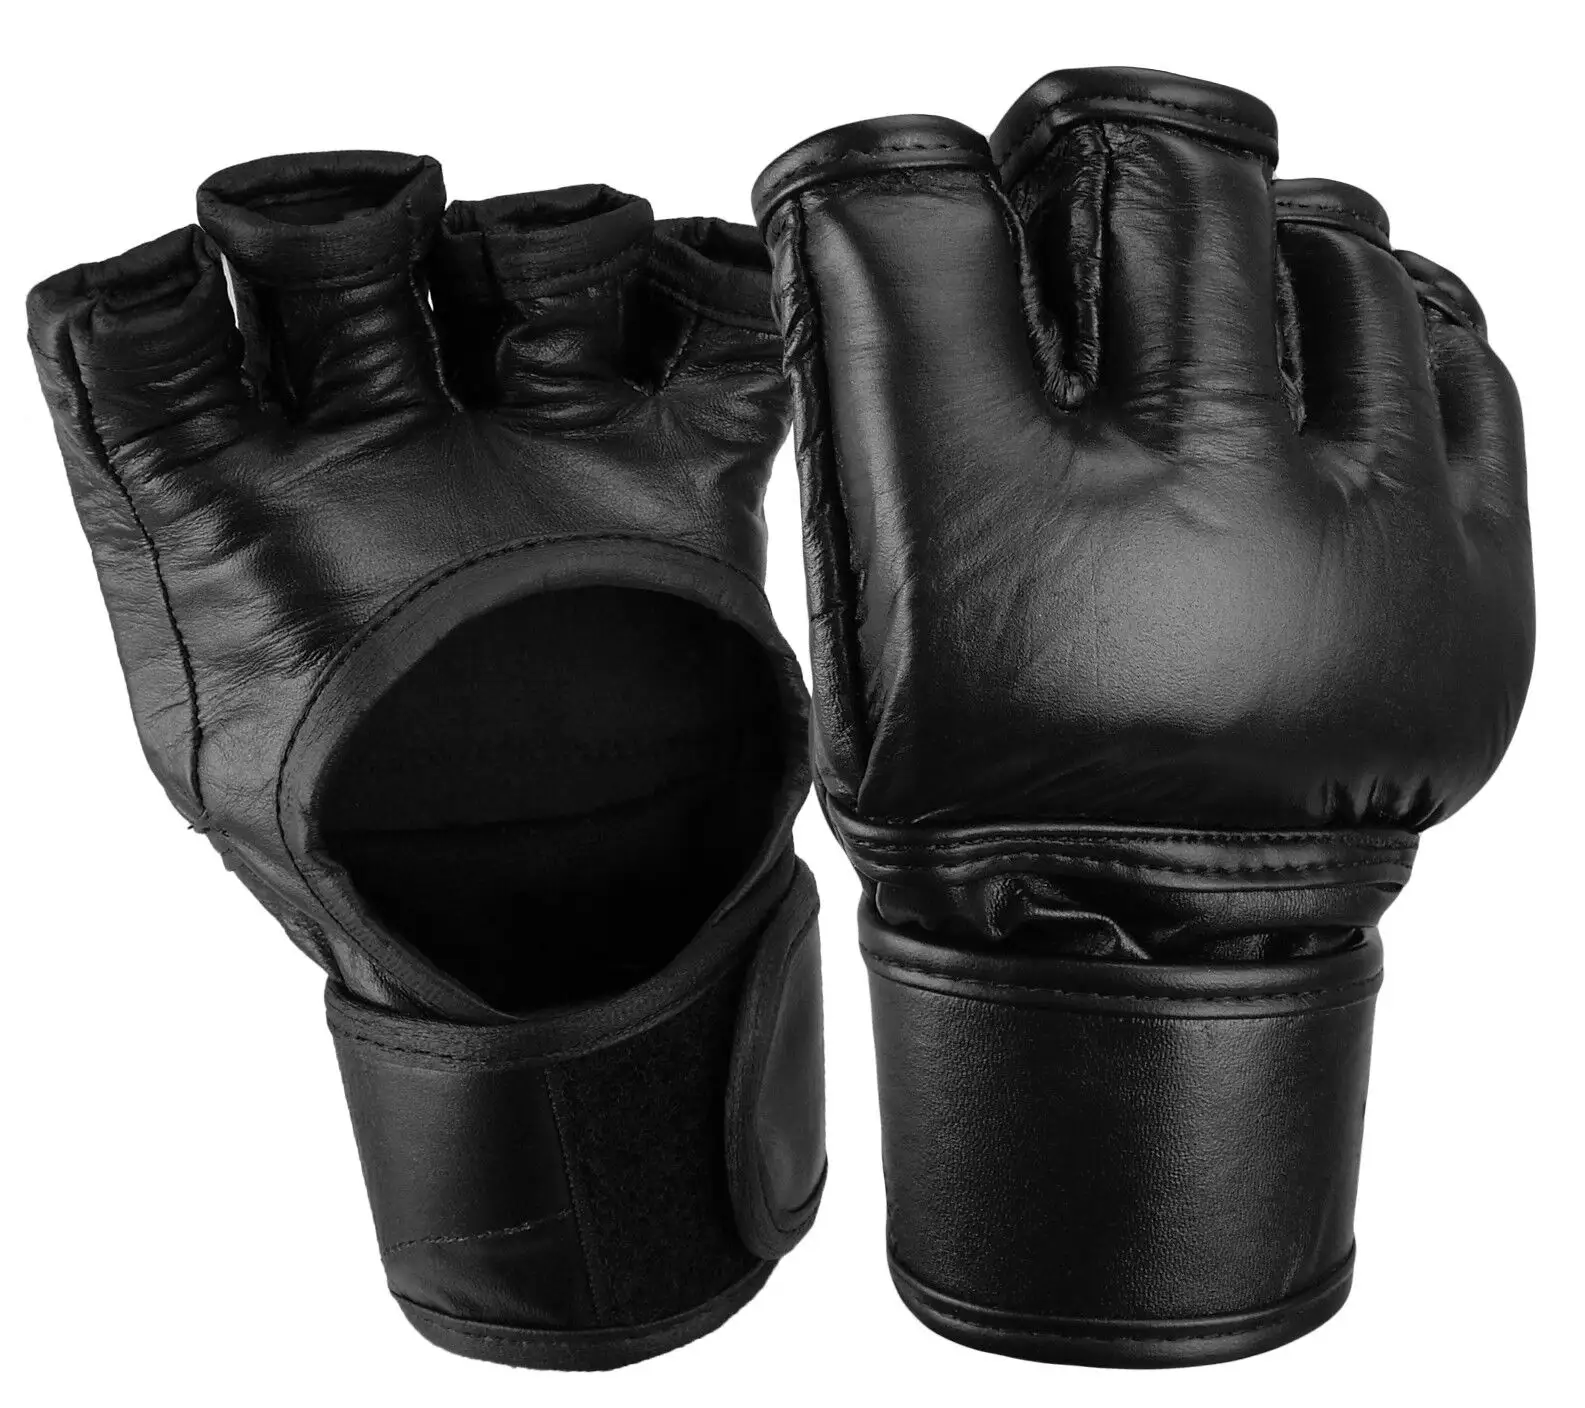 ถุงมือต่อสู้ MMA ถุงมือหนังแท้สไตล์มืออาชีพถุงมือสำหรับแข่งขัน